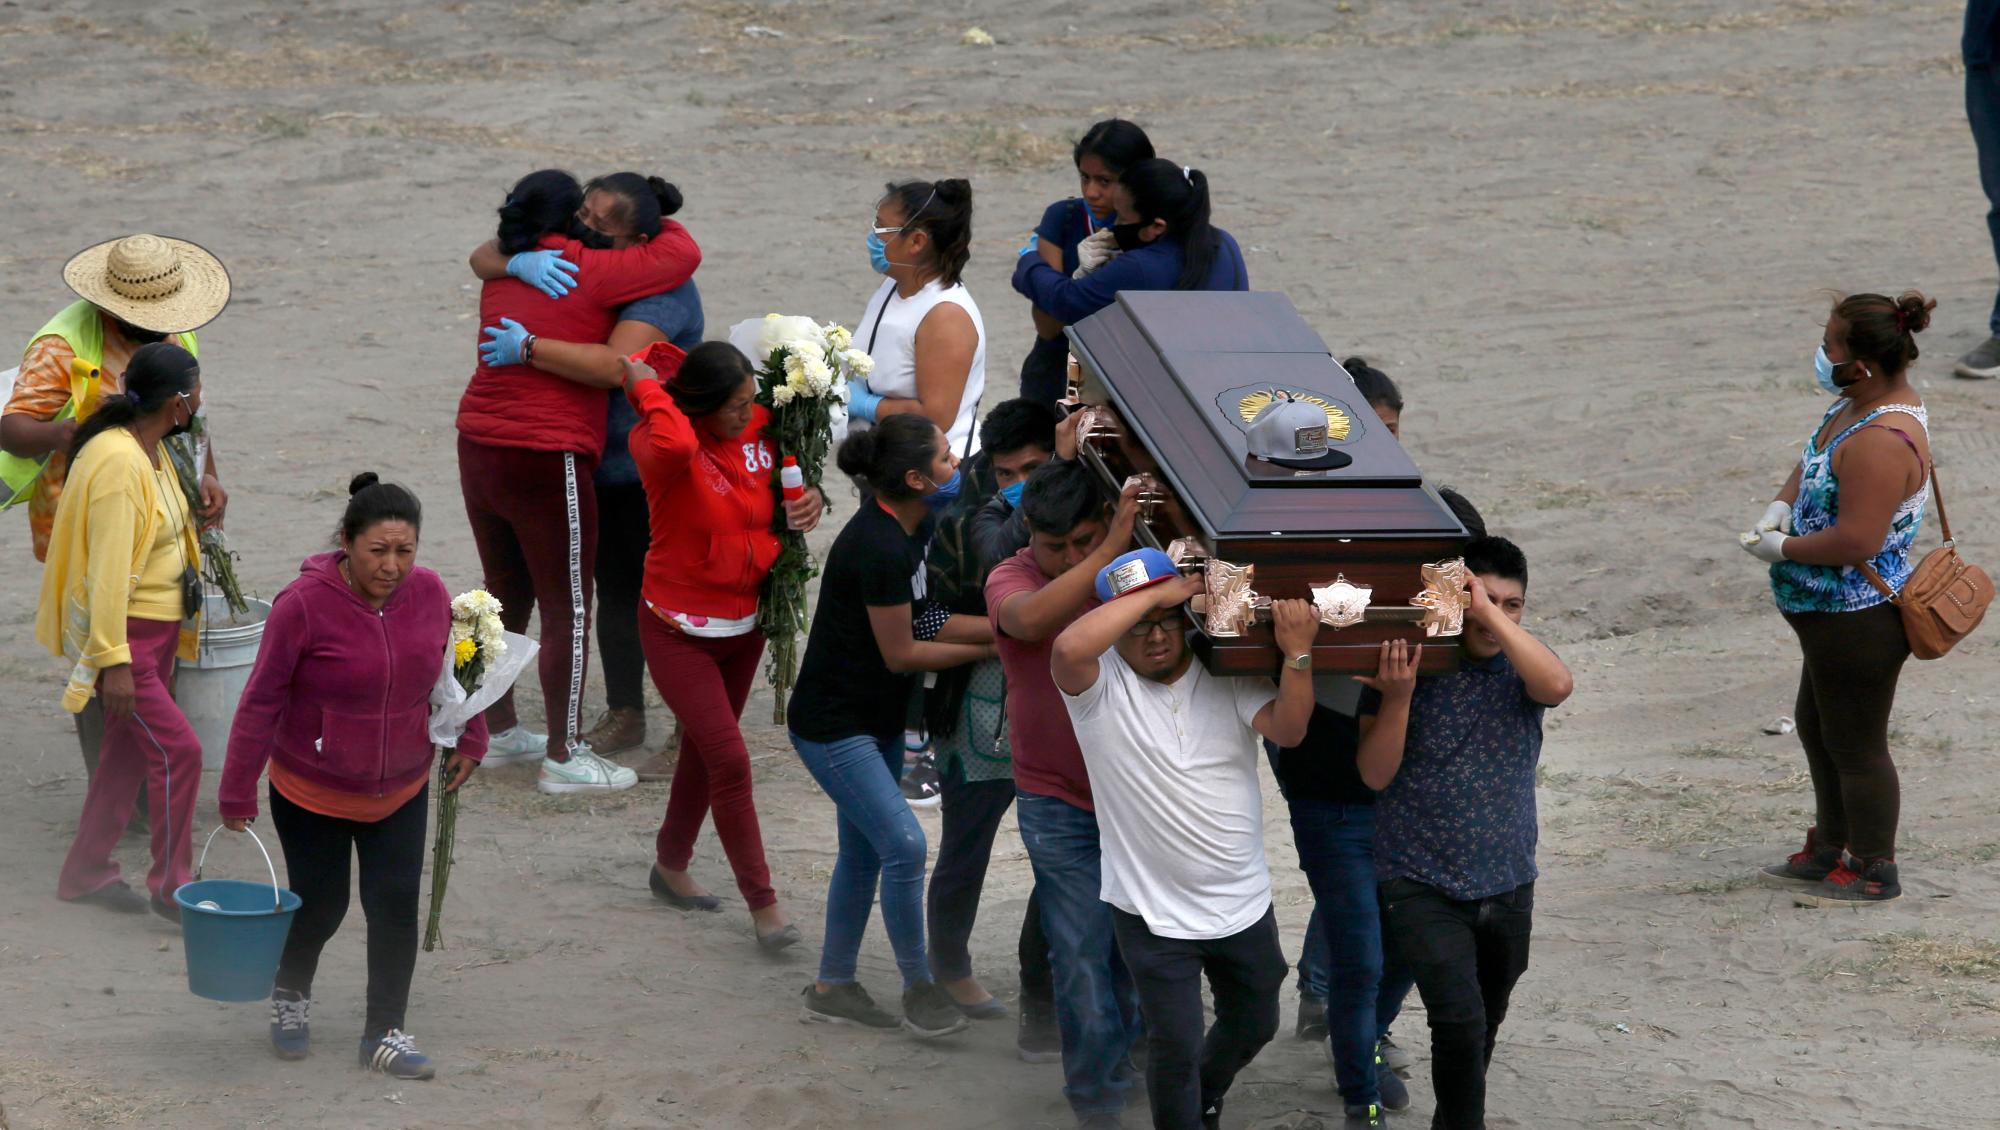 Los familiares llevan el ataúd que contiene los restos de un miembro de la familia en el recién construido Cementerio Municipal del Valle de Chalco, construido para dar cabida al aumento de las muertes en medio de la nueva pandemia de coronavirus, en las afueras de la Ciudad de México, el jueves 21 de mayo de 2020. ( Foto AP / Marco Ugarte)